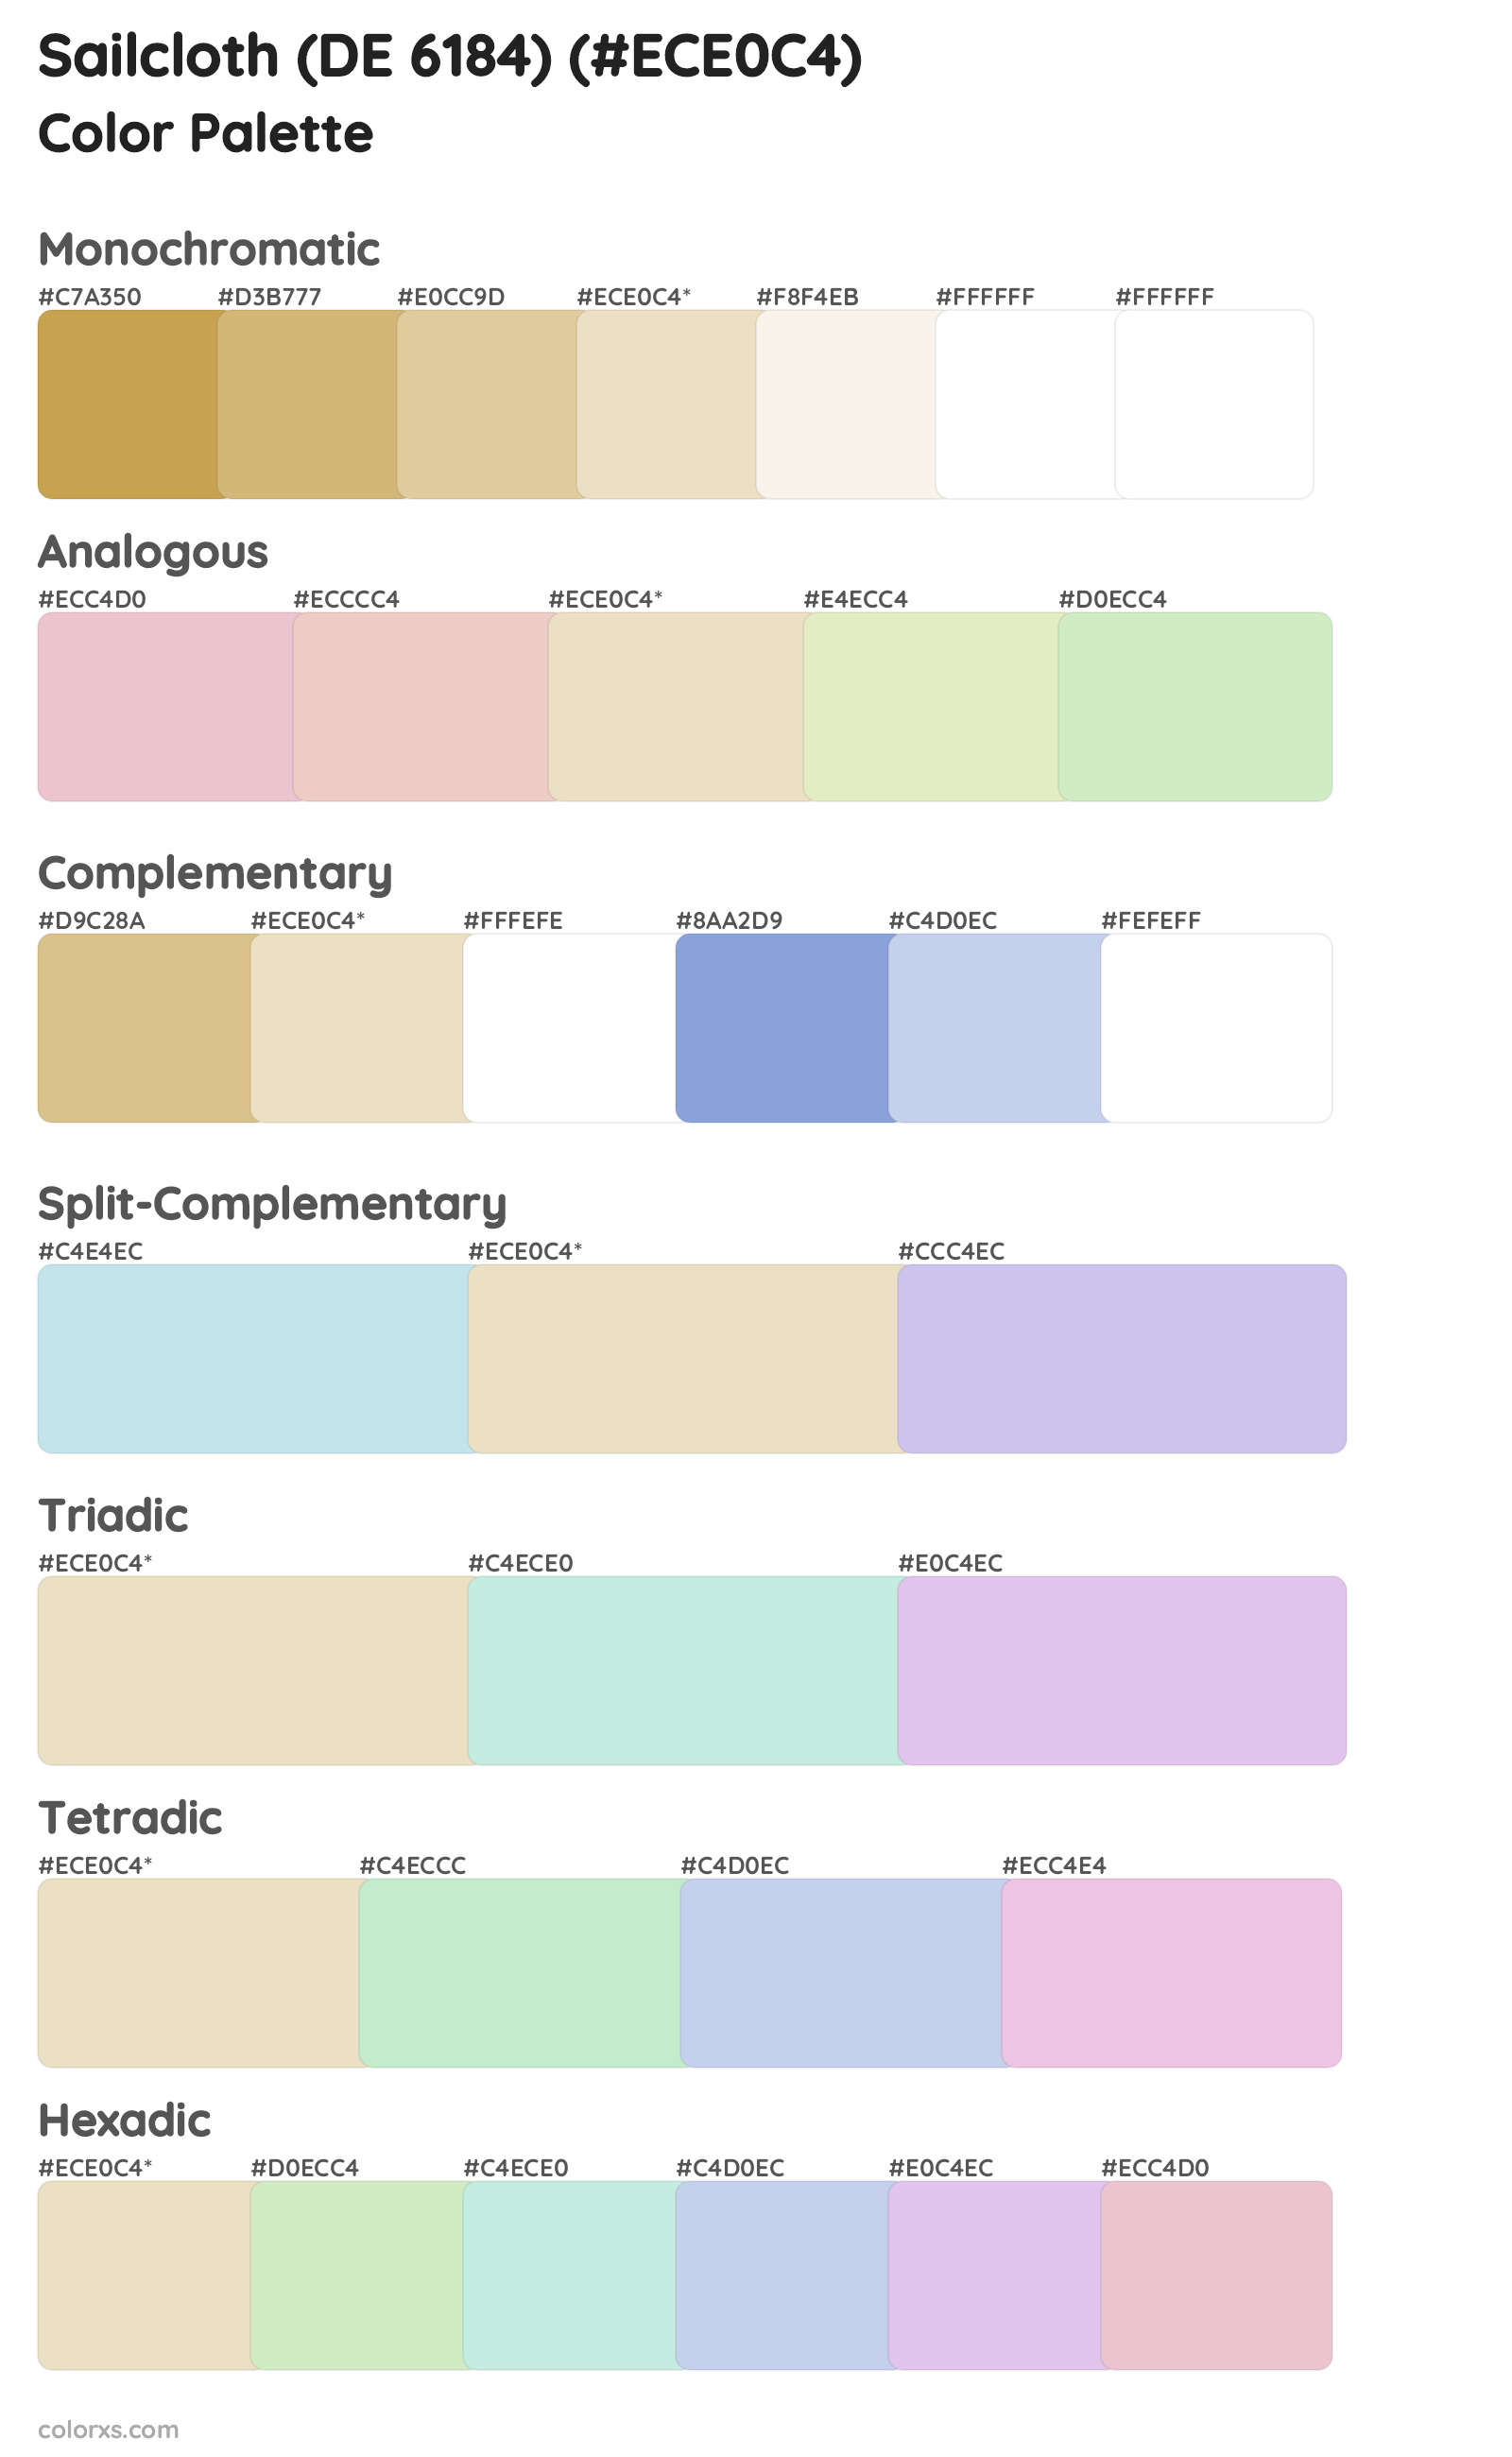 Sailcloth (DE 6184) Color Scheme Palettes